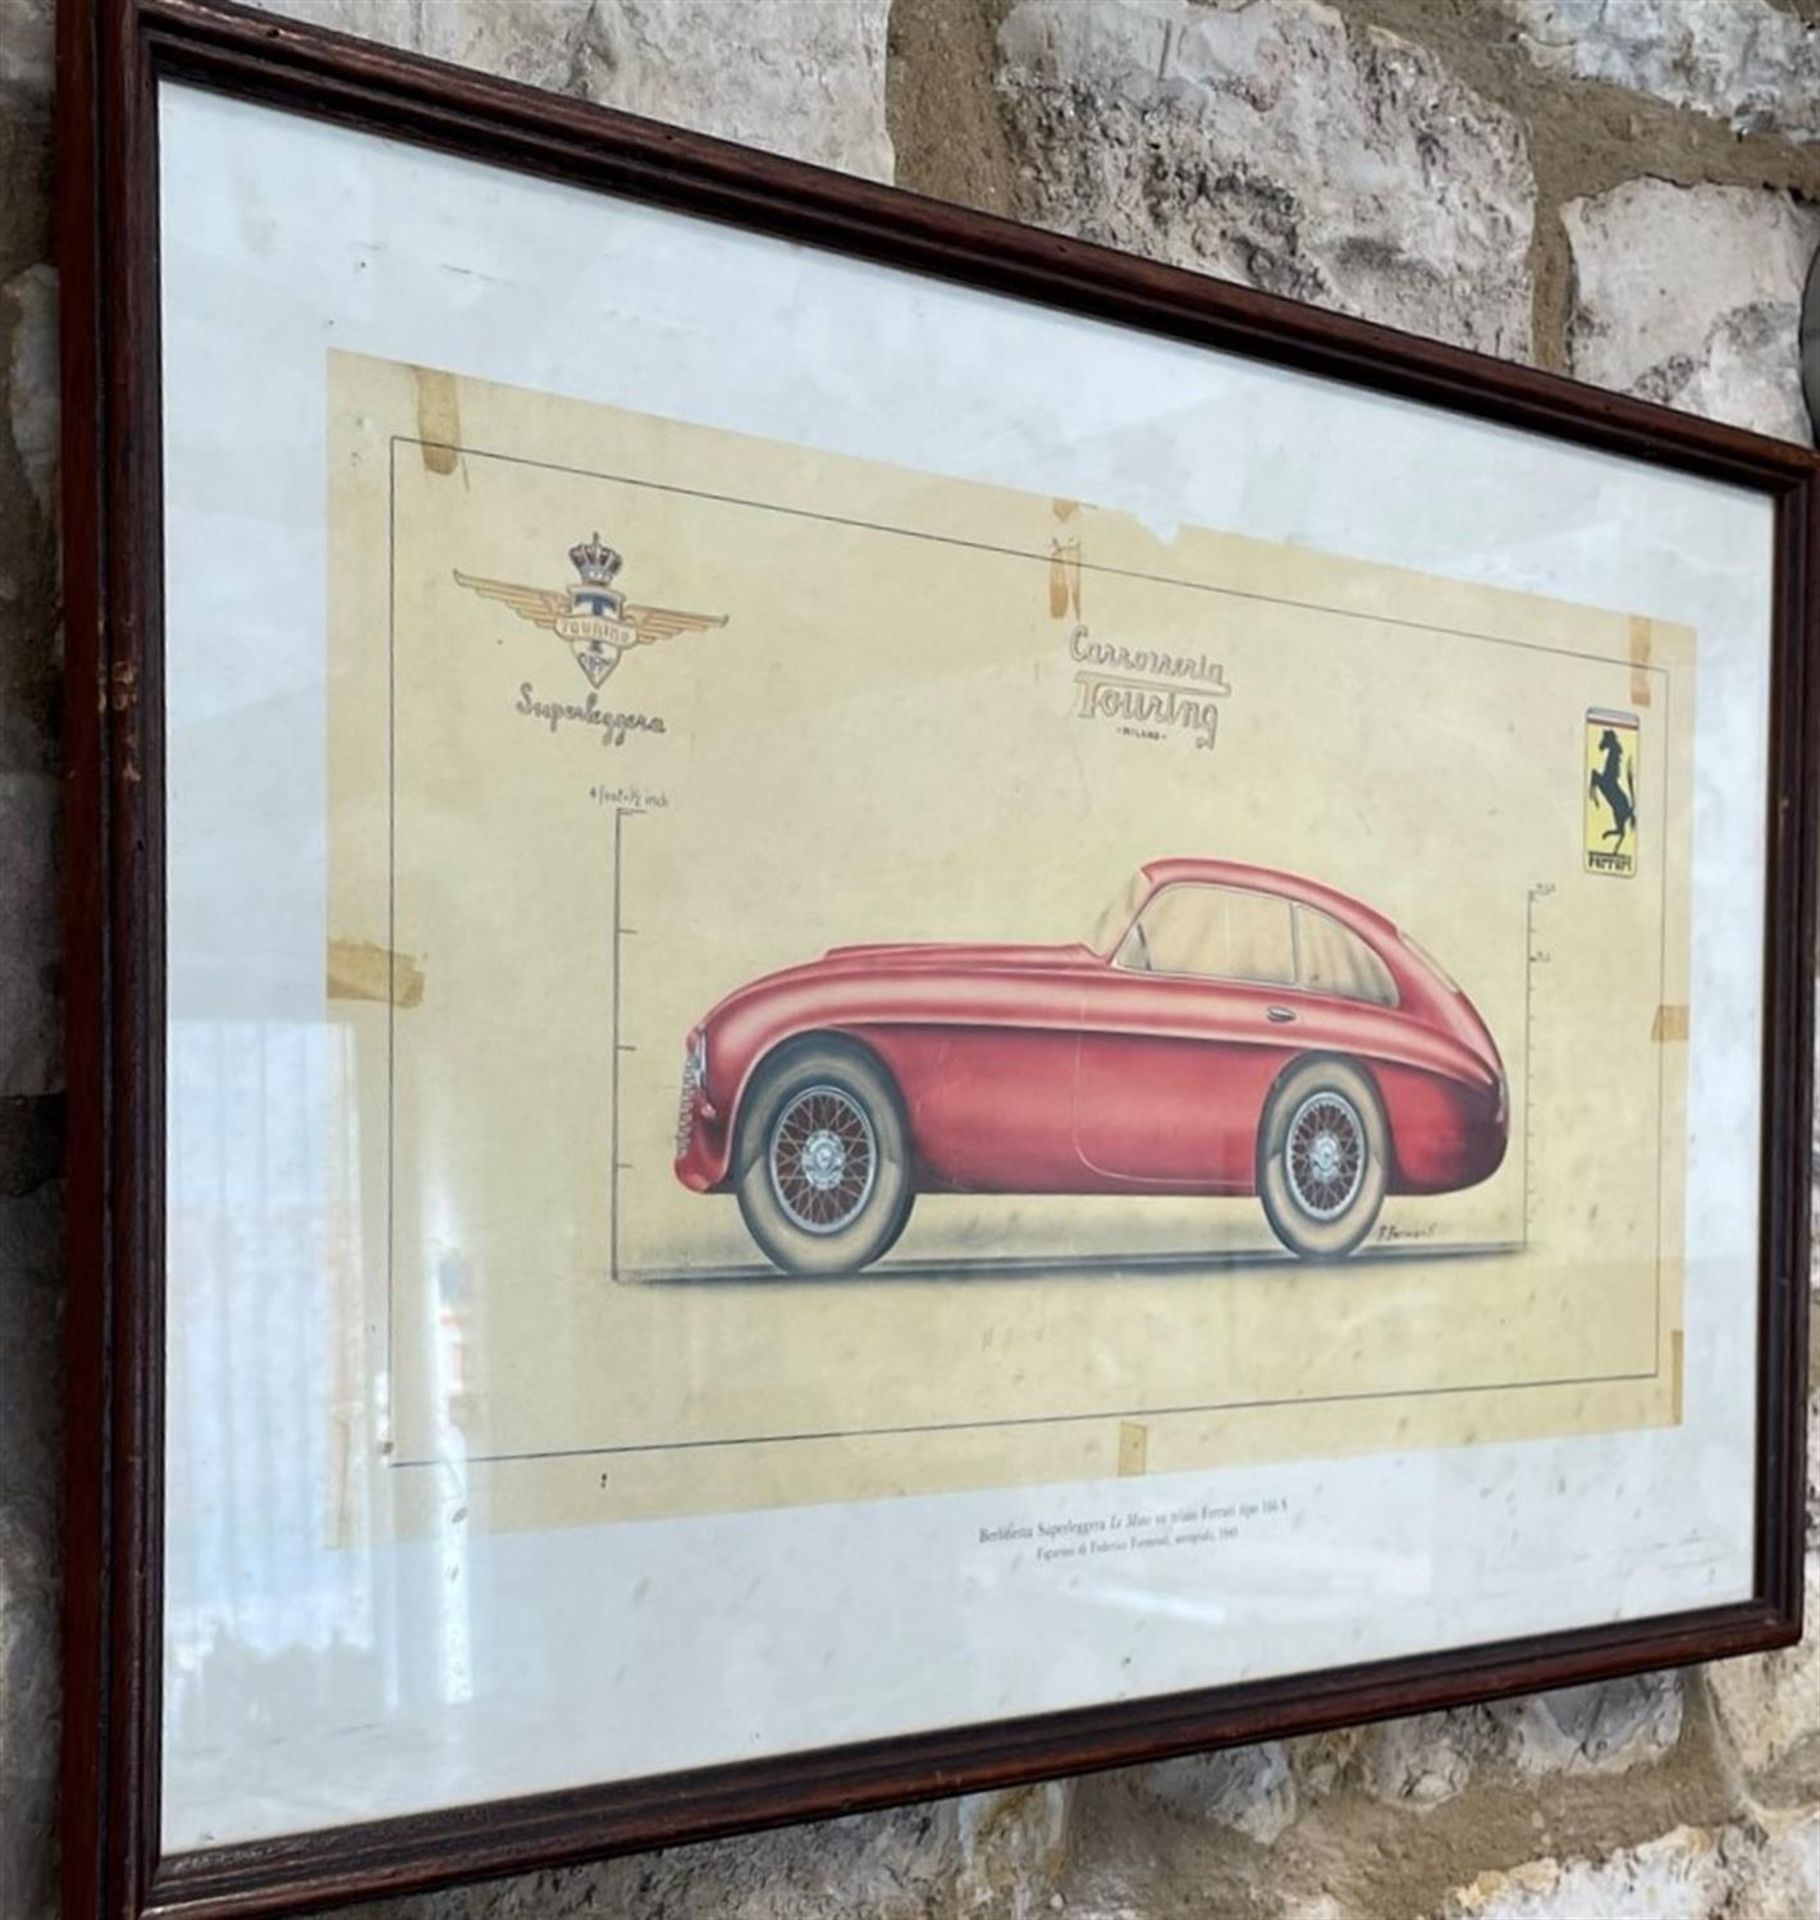 Period design submission from Carrozzeria Touring Milano to Enzo Ferrari in 1949